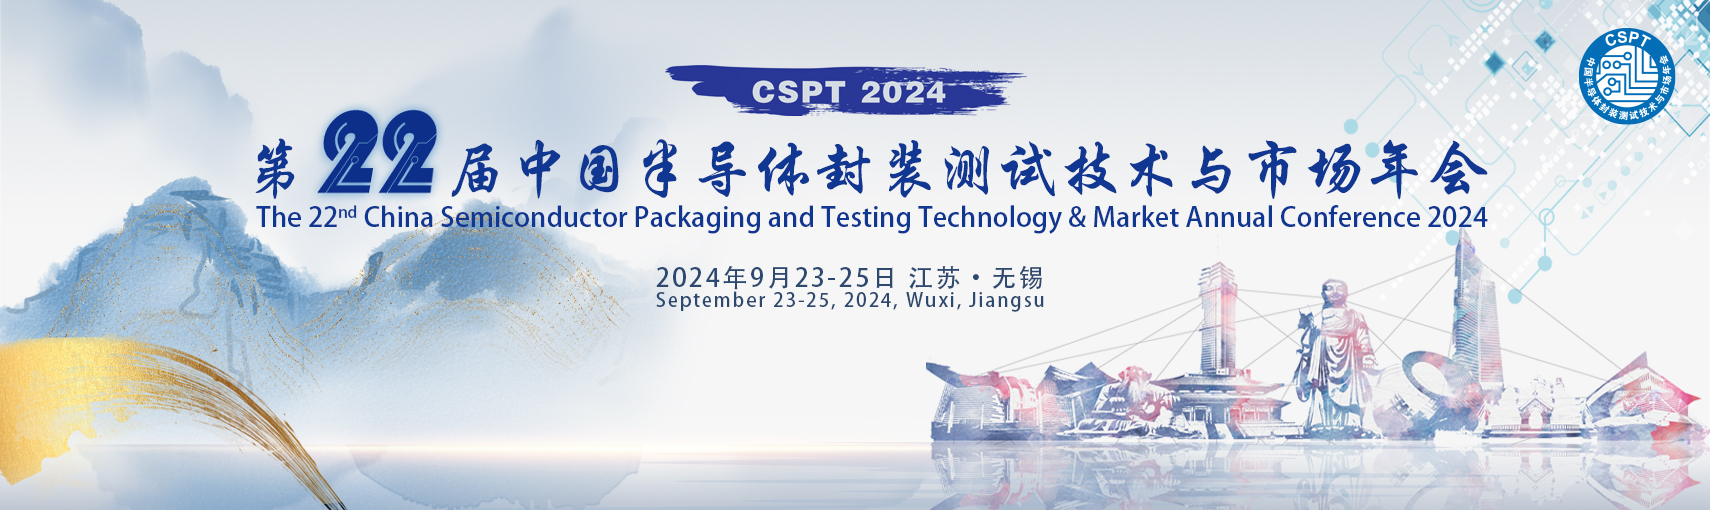 关于召开“2024年中国半导体封装测试技术与市场年会”的通知